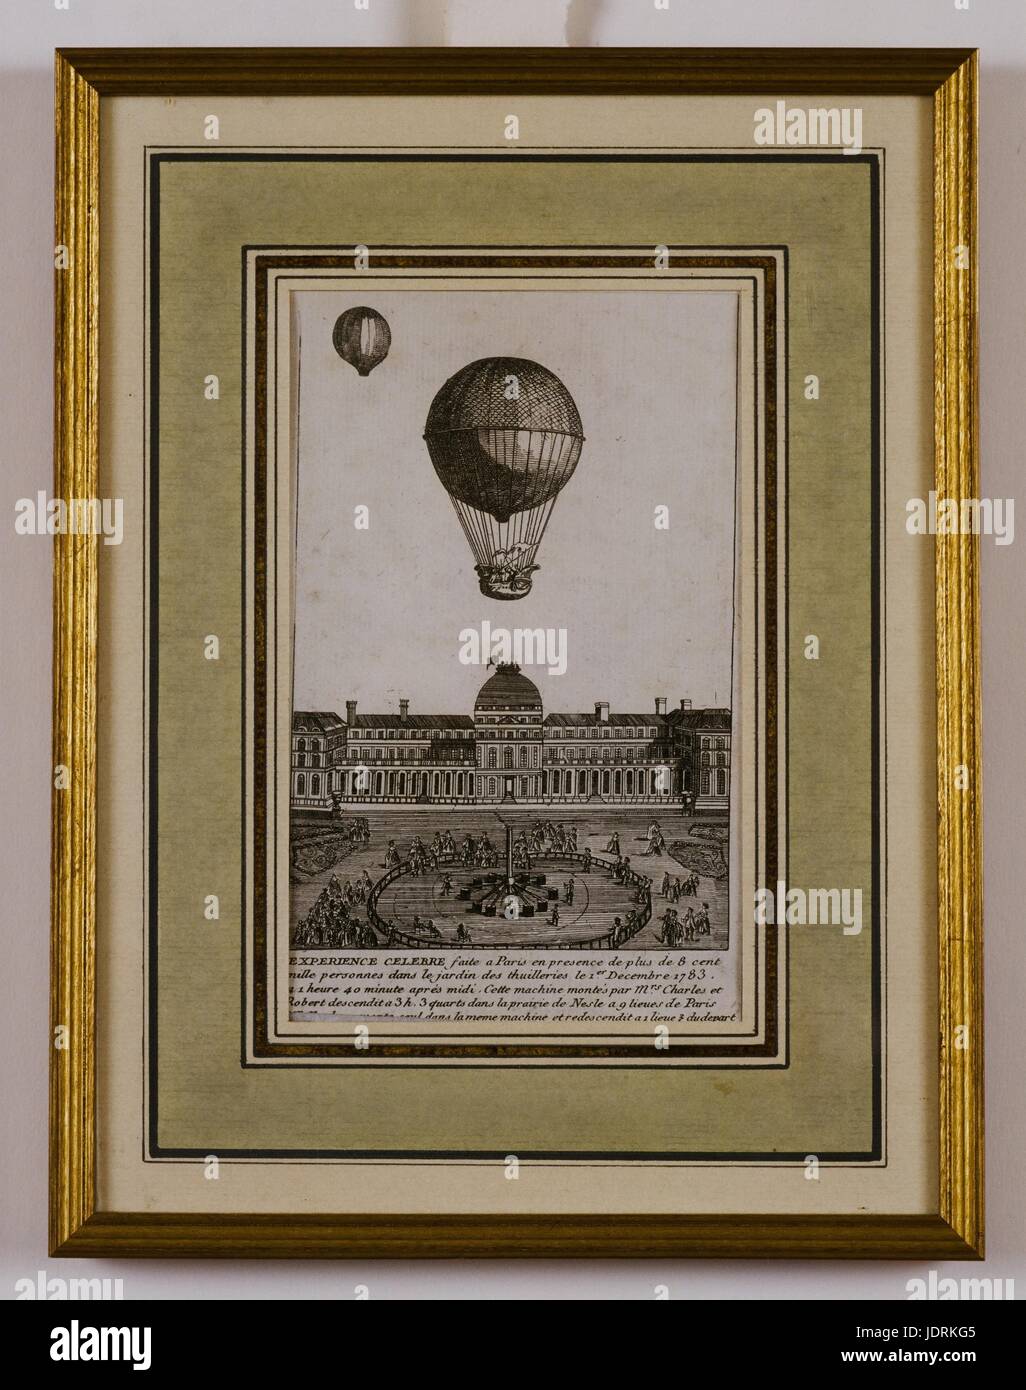 Charles und Robert Ballon experimentieren in den Jardin des 'Thuilleries' am 1. Dezember 1783. Es war Preceeded durch ein Pilotballon geschickt, um die Richtung des Windes zu testen.  Gerahmte Radierung (44 x 31,5 cm) Müller-Quênot Sammlung auf halb eins, ein Schuss gefeuert wurde, um den Beginn des Experiments zu verkünden. Aber nichts geschah. Der Ballon nicht in den Himmel abheben und Enttäuschung begann allmählich durch die Menge zu verbreiten. Charles kam Etienne Montgolfier, der sich das Experiment war. Charles wollte Etiennes vorherige öffentliche Demütigung an der Champs de ausgleichen Stockfoto